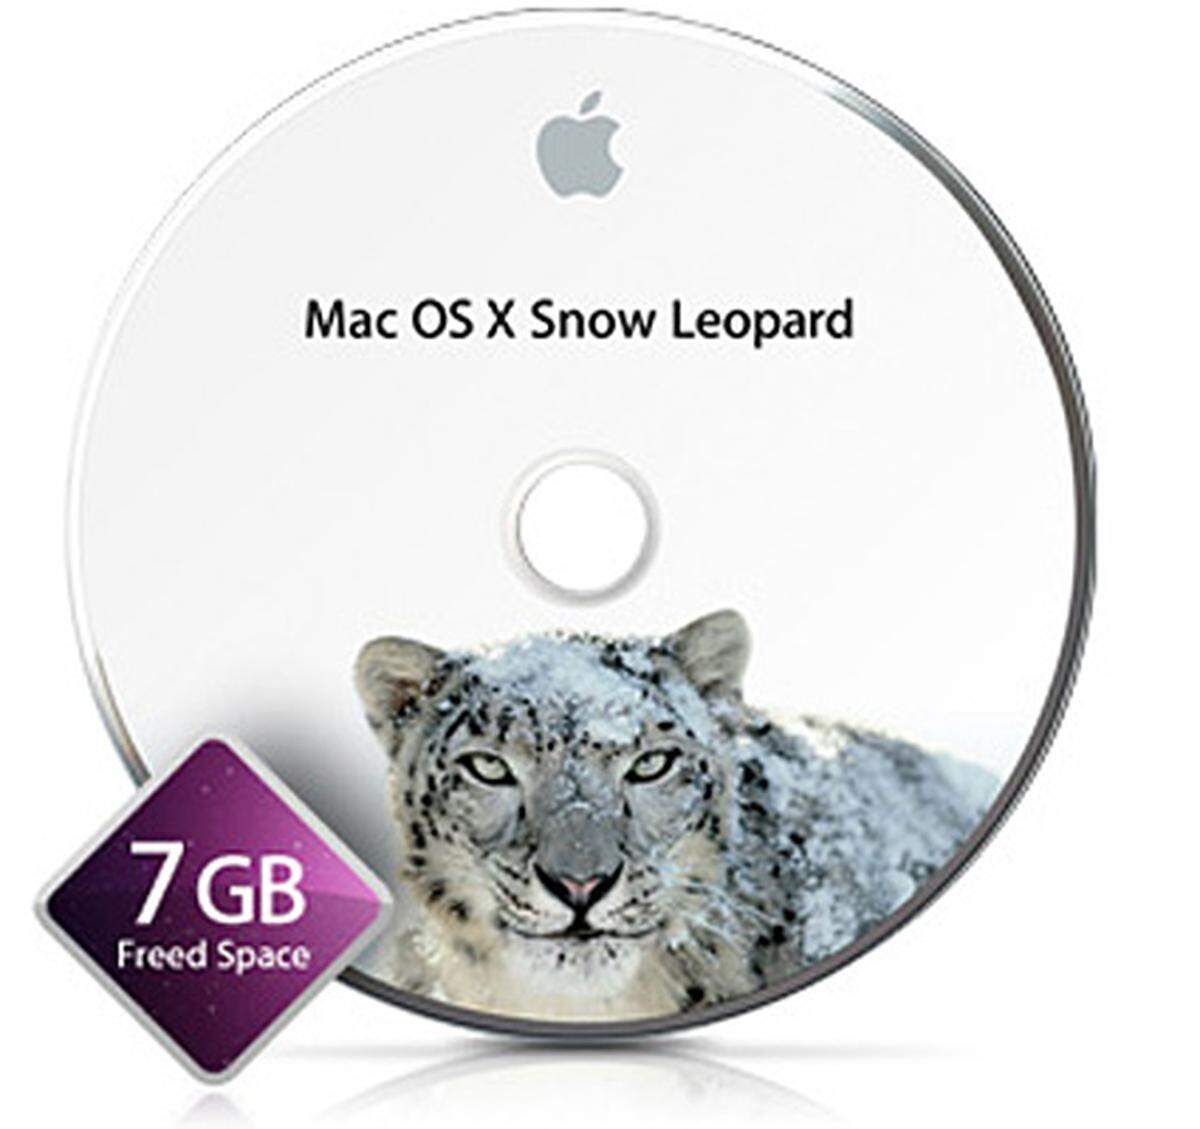 Das Upgrade auf Mac OS X 10.6 Snow Leopard vom Vorgängersystem Leopard ist um 29 Euro möglich. Eine Familienlizenz für fünf Macs kostet 49 Euro. Wer zwischen 8. Juni und 26. Dezember einen neuen Mac mit altem System kauft, kann um rund neun Euro upgraden. Nutzer älterer Systeme wie Mac OS X Tiger müssen für ein Upgrade tiefer in die Tasche greifen und um rund 170 Euro (Familienlizenz 229 Euro) ein Mac Box Set inklusive iLive und iWork kaufen.